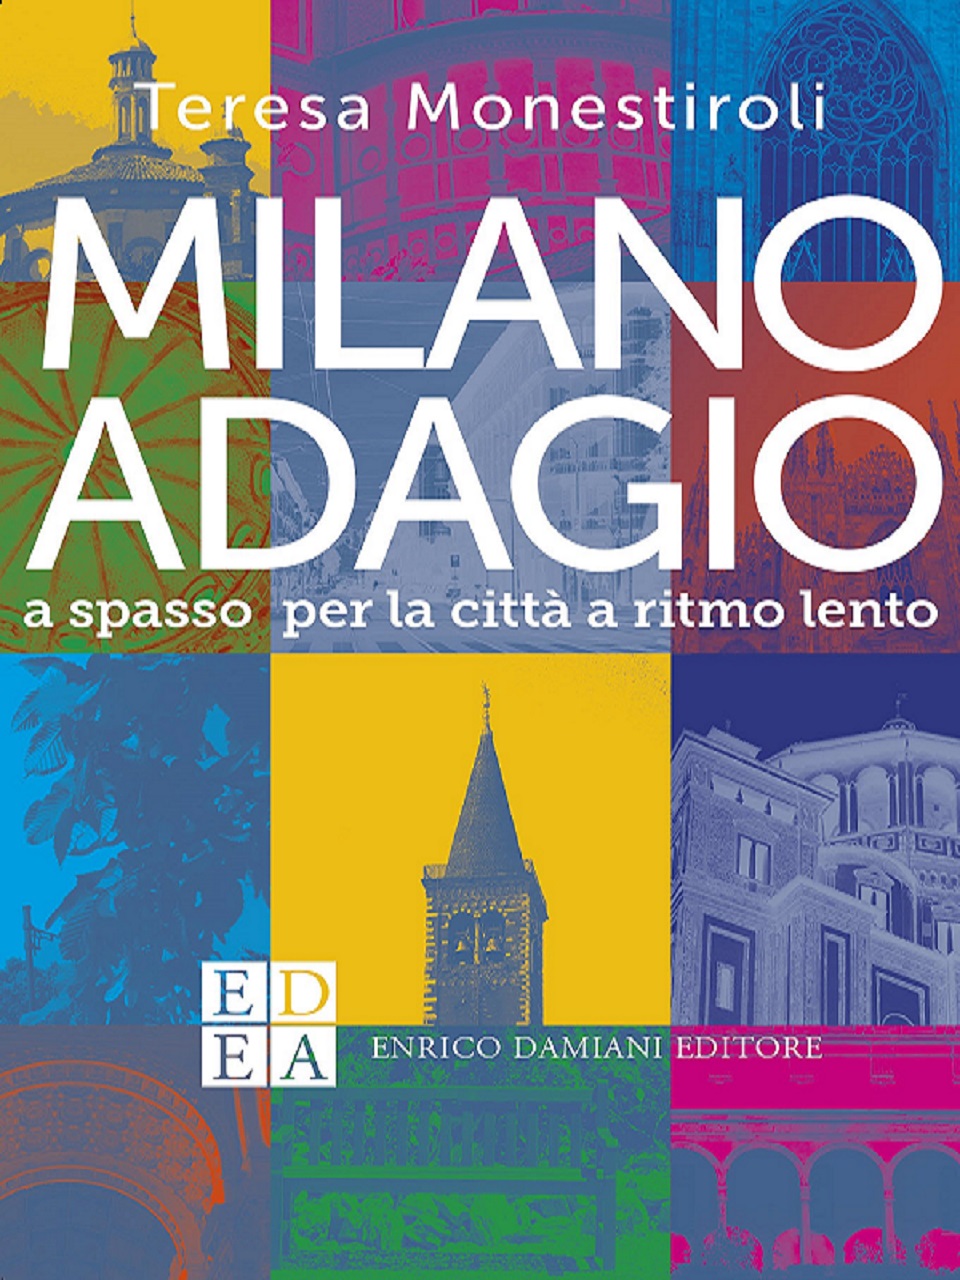 Milano Adagio di Teresa Monestiroli, in libreria dal 7 novembre